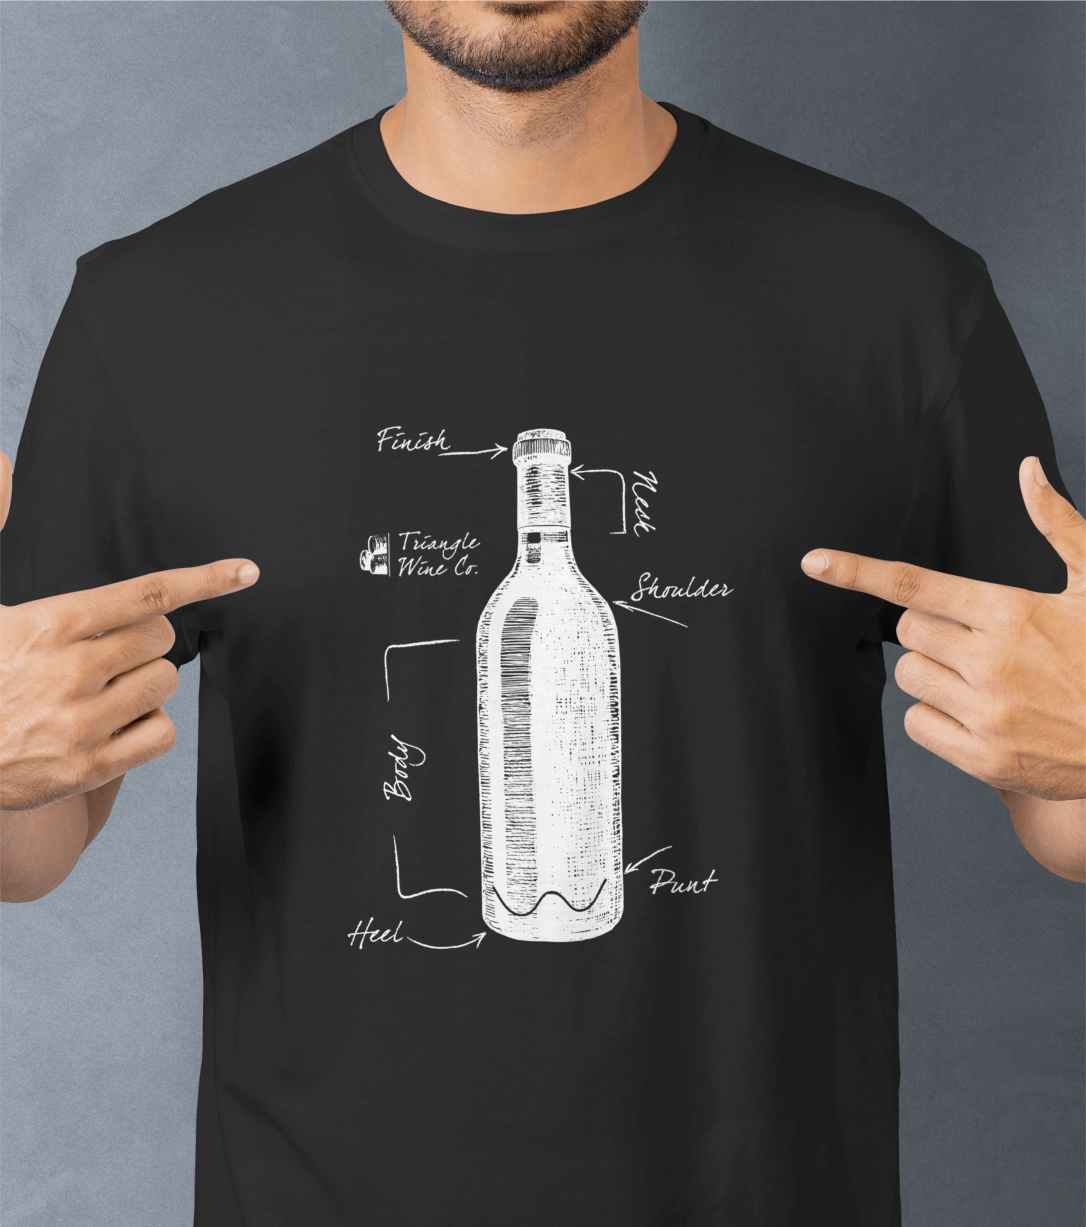 Triangle Wine Company unique design merch t-shirt